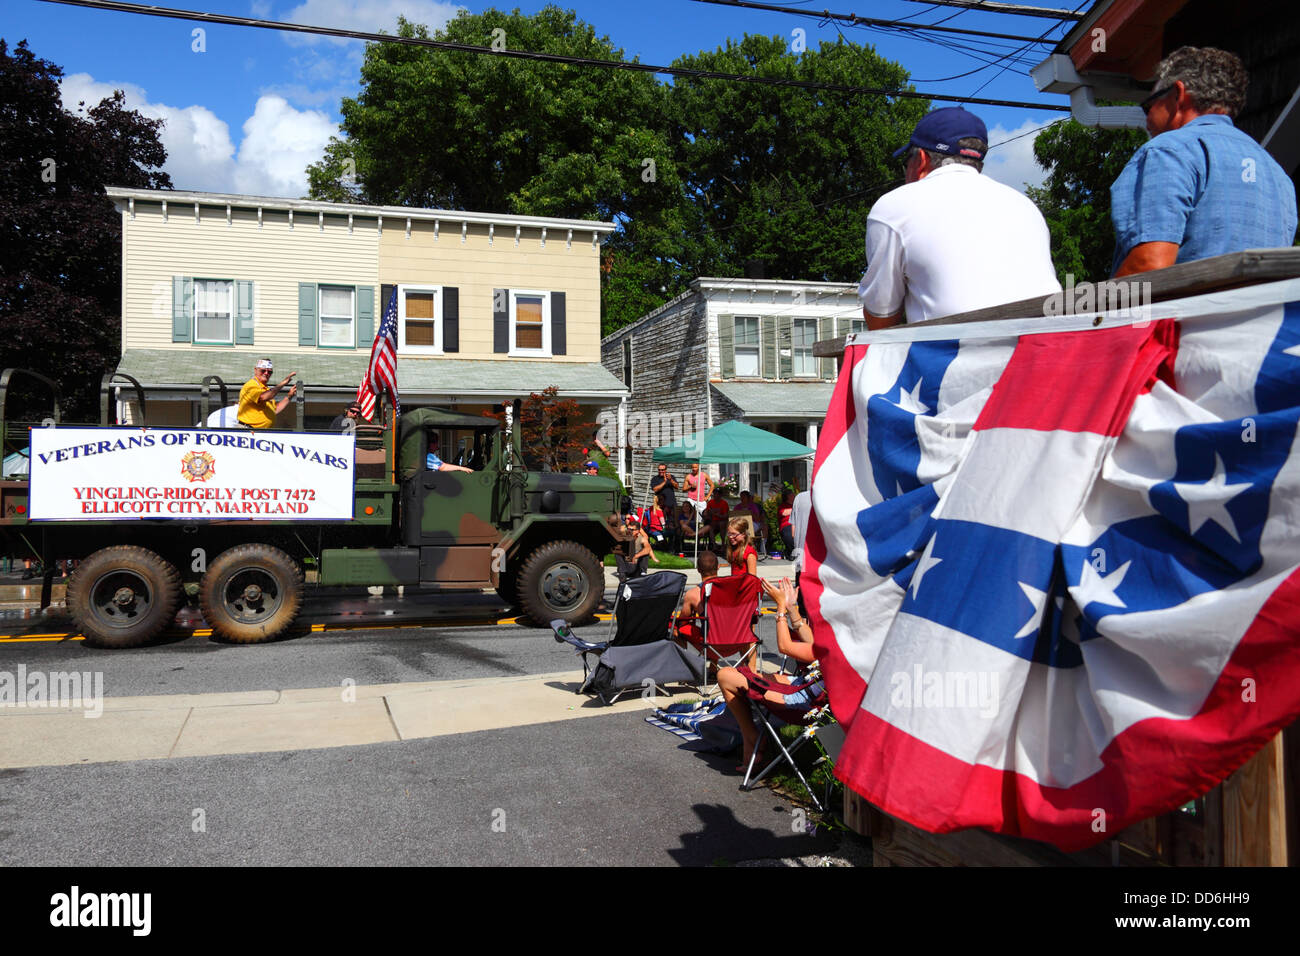 Les vétérans des guerres étrangères participent à 4th des parades du jour de l'indépendance de juillet, Catonsville, Maryland, États-Unis Banque D'Images